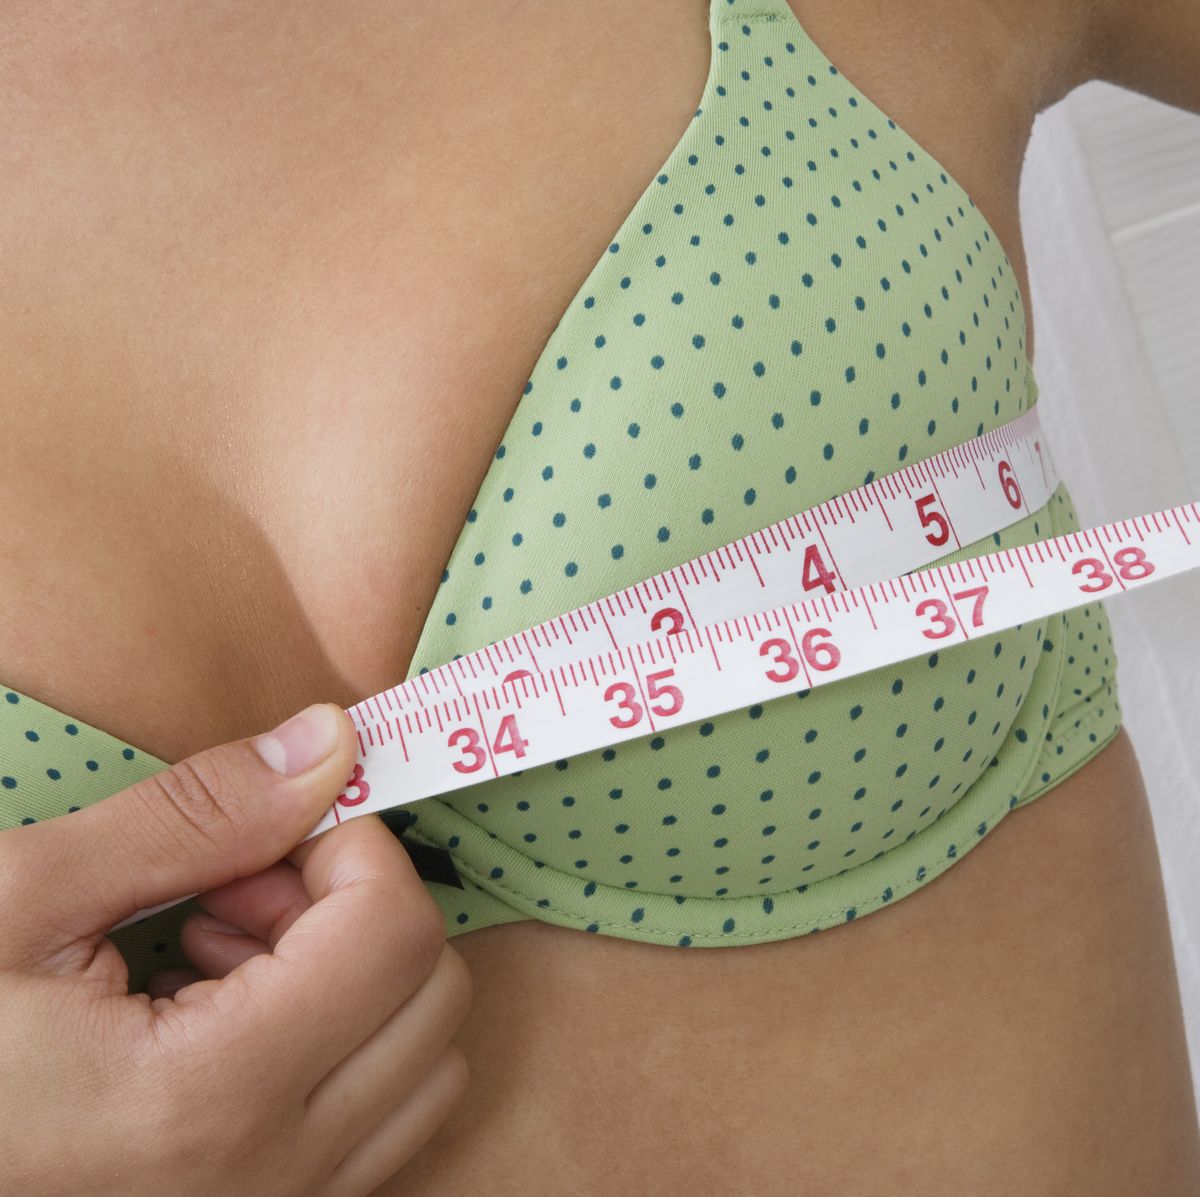 How do I Measure my Bra Size at Home? – Snag EU